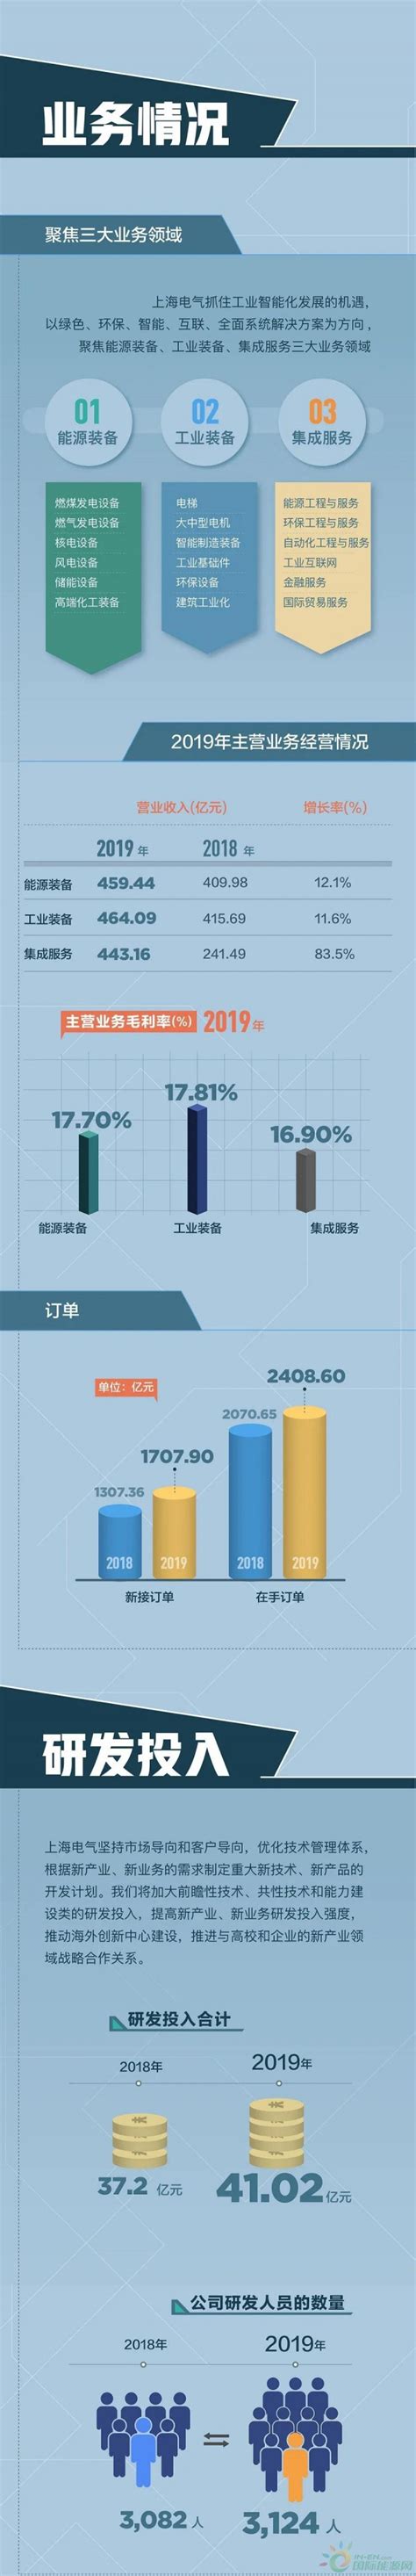 上海电气2020年度业绩说明会